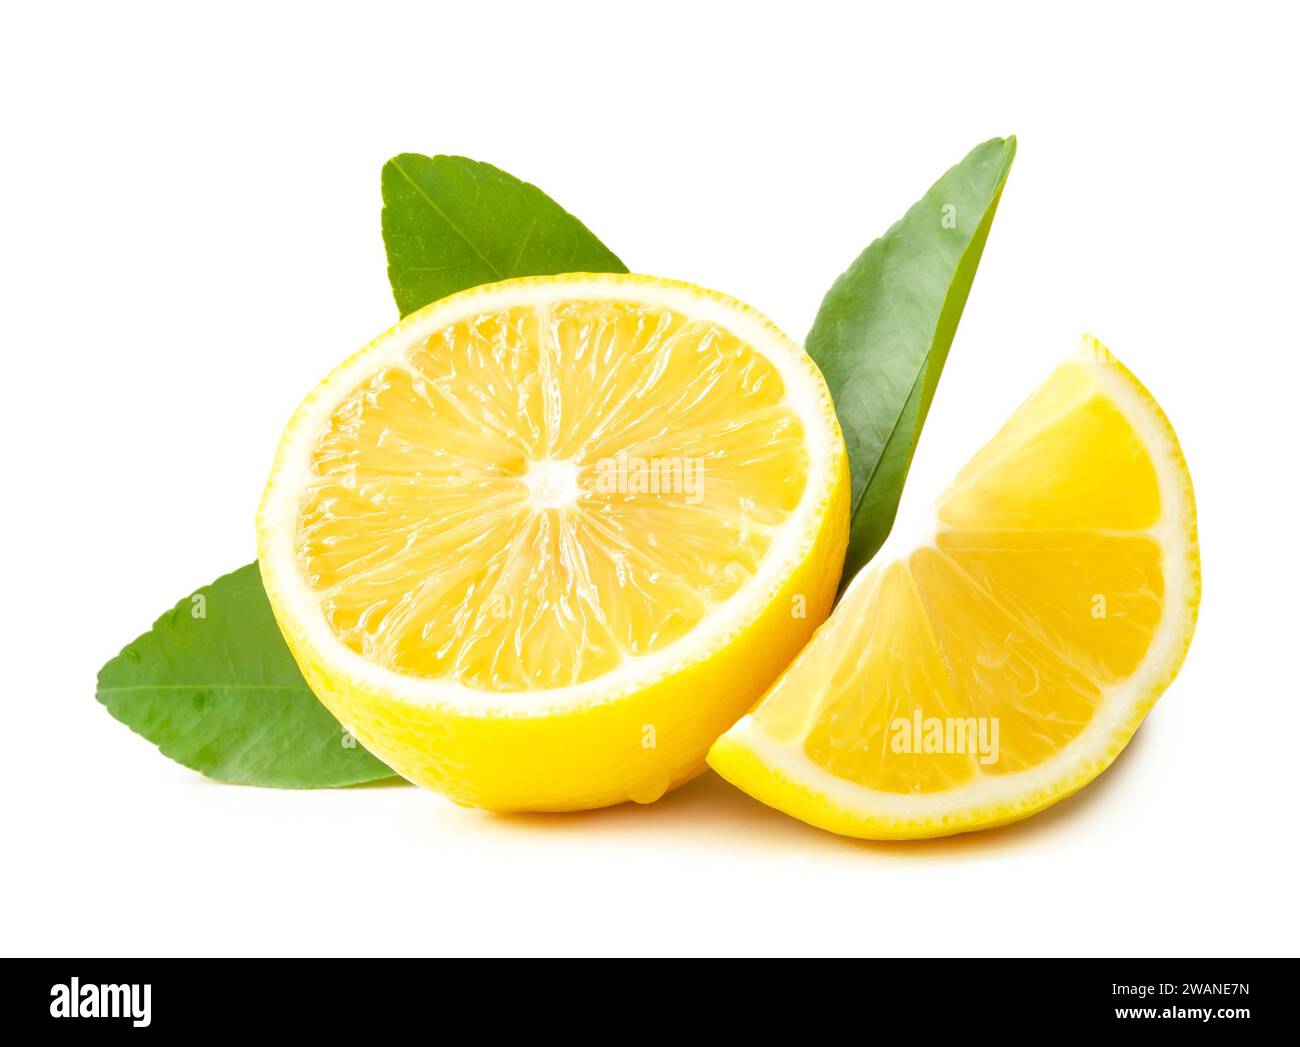 La vista frontale del limone giallo fresco a metà e a fette e foglie è isolata su sfondo bianco con percorso di ritaglio. Foto Stock